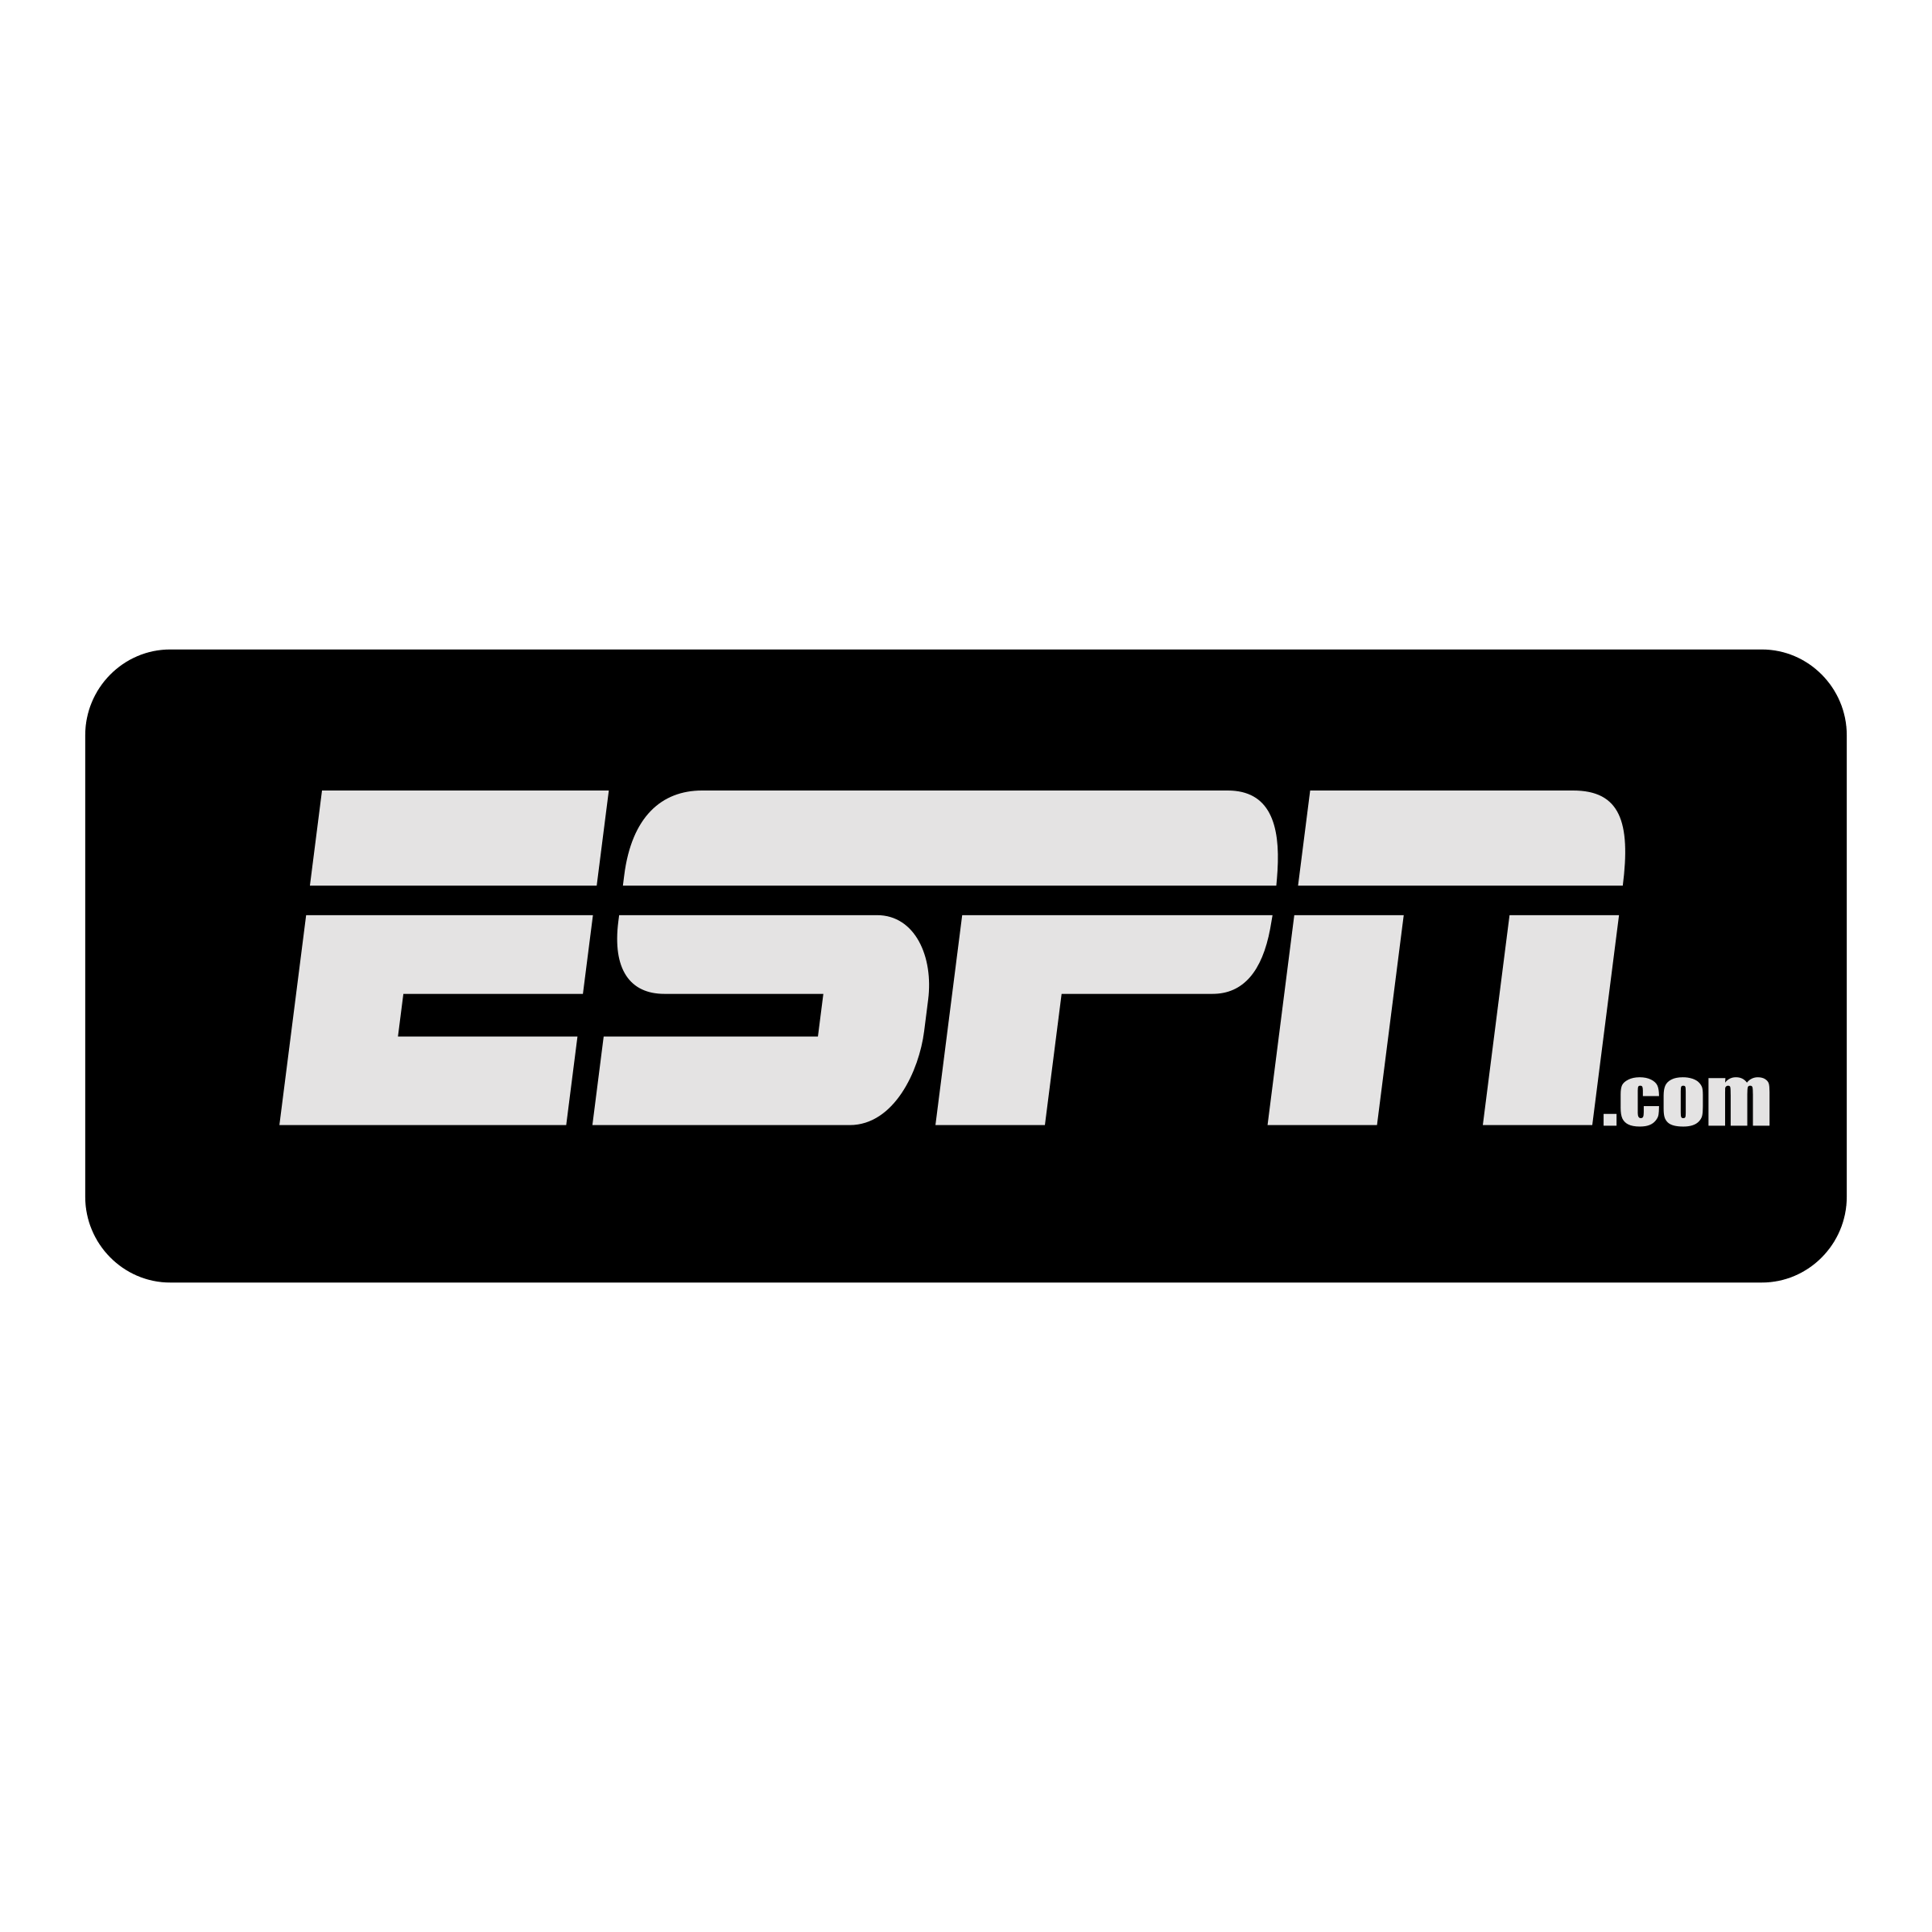 ESPN.com Logo - ESPN com Logo PNG Transparent & SVG Vector - Freebie Supply